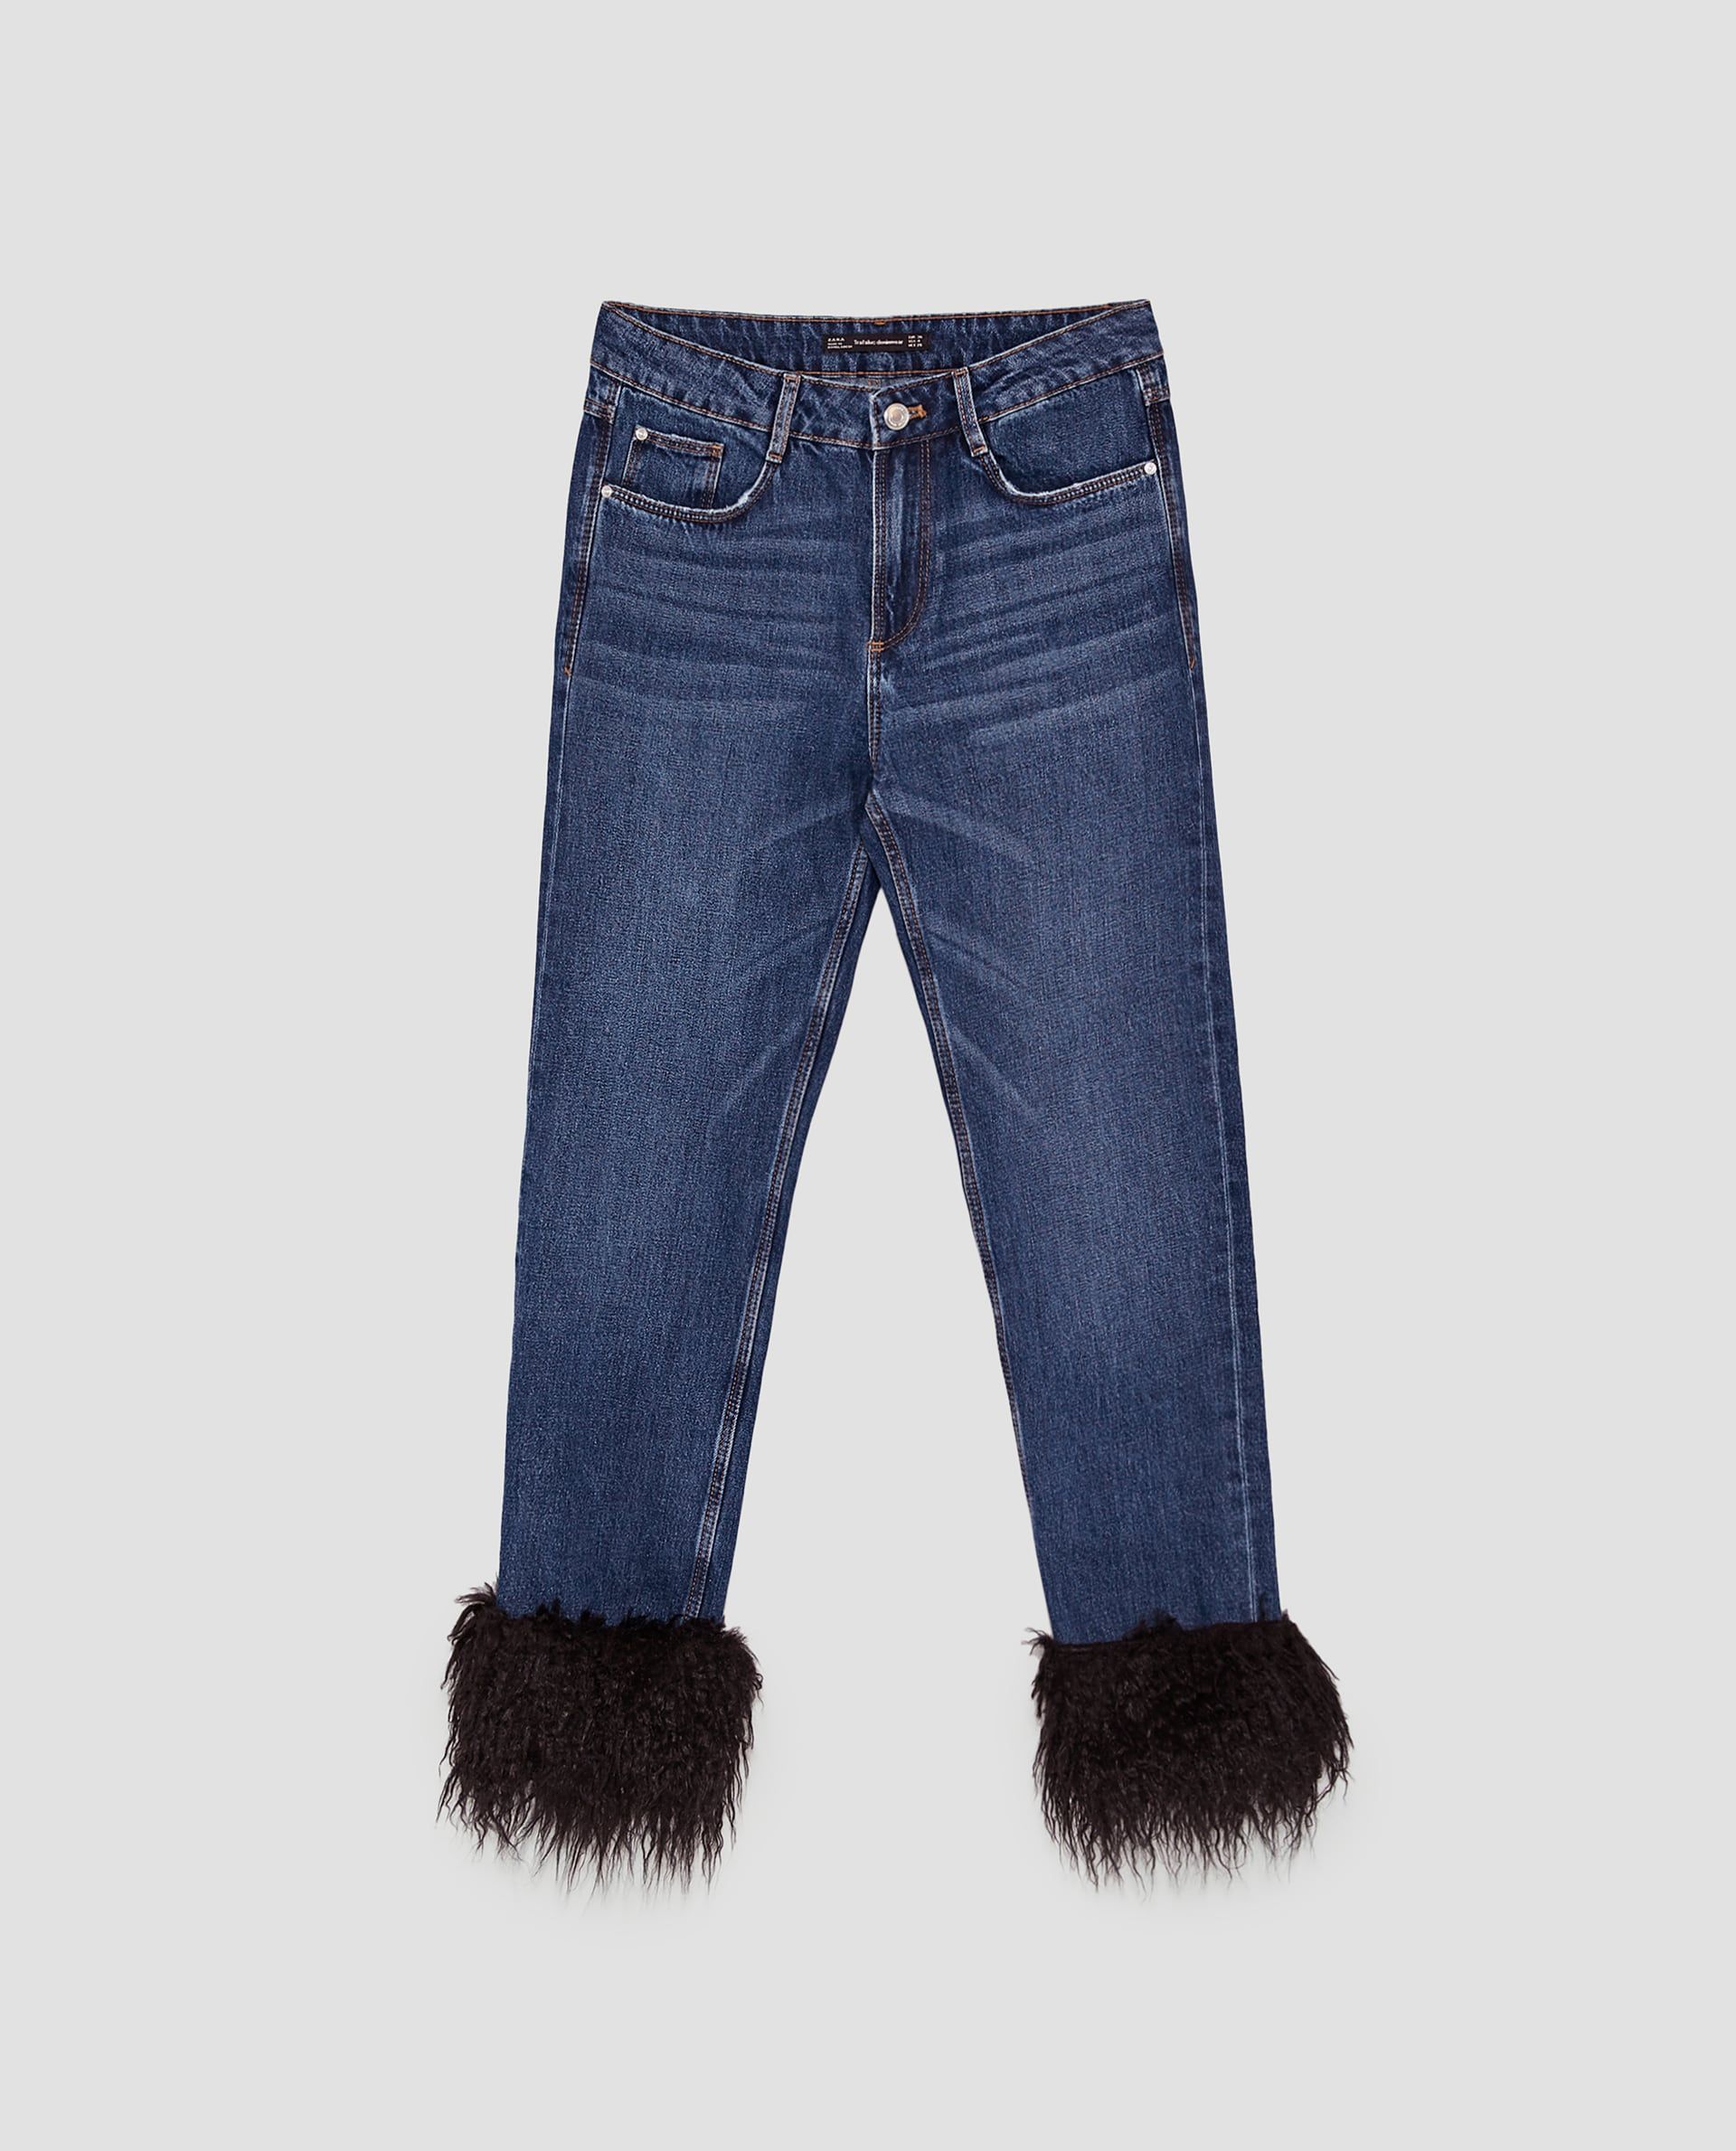 #PopbelaOOTD: Trending! Ini Jeans Kekinian yang Wajib Kamu Punya